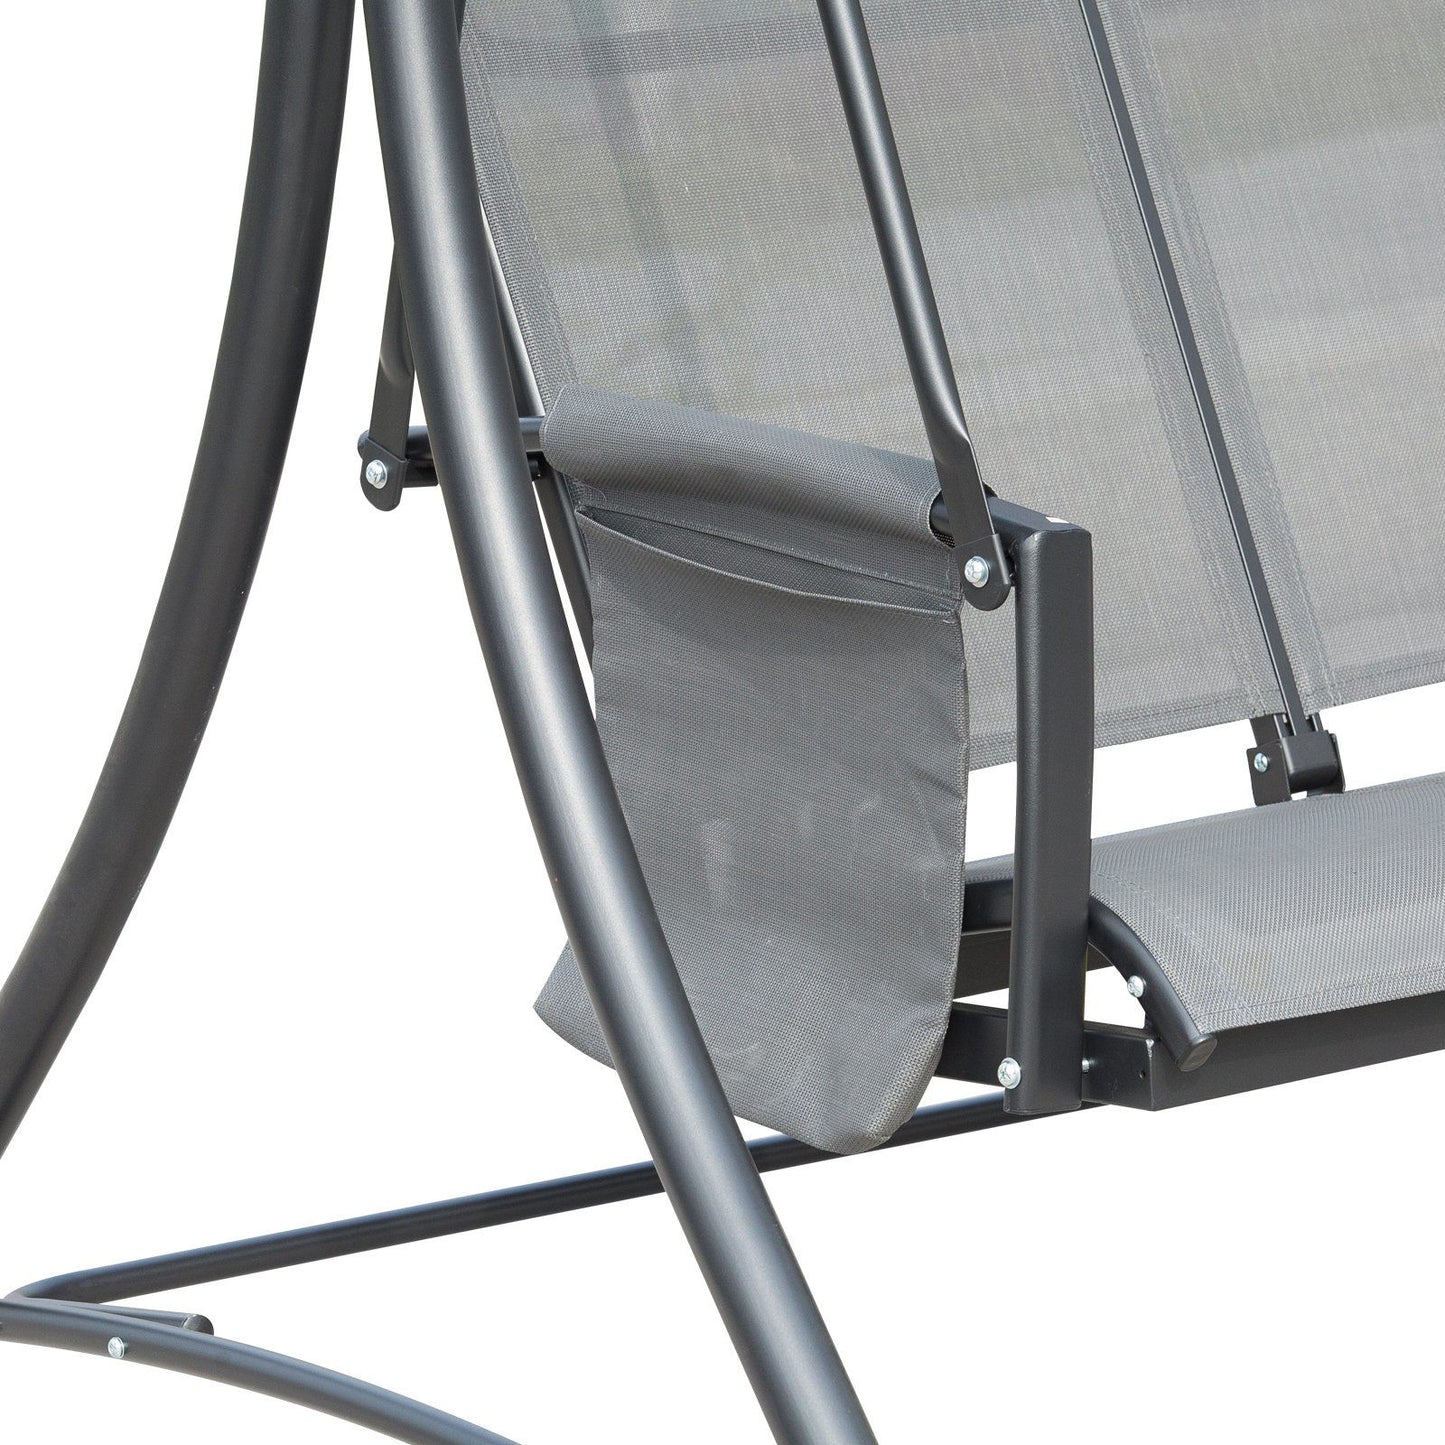 Canapé Amisk Hollywood Swing de Nancy - Rocking chair - 3 places - Gris - Métal, Aluminium